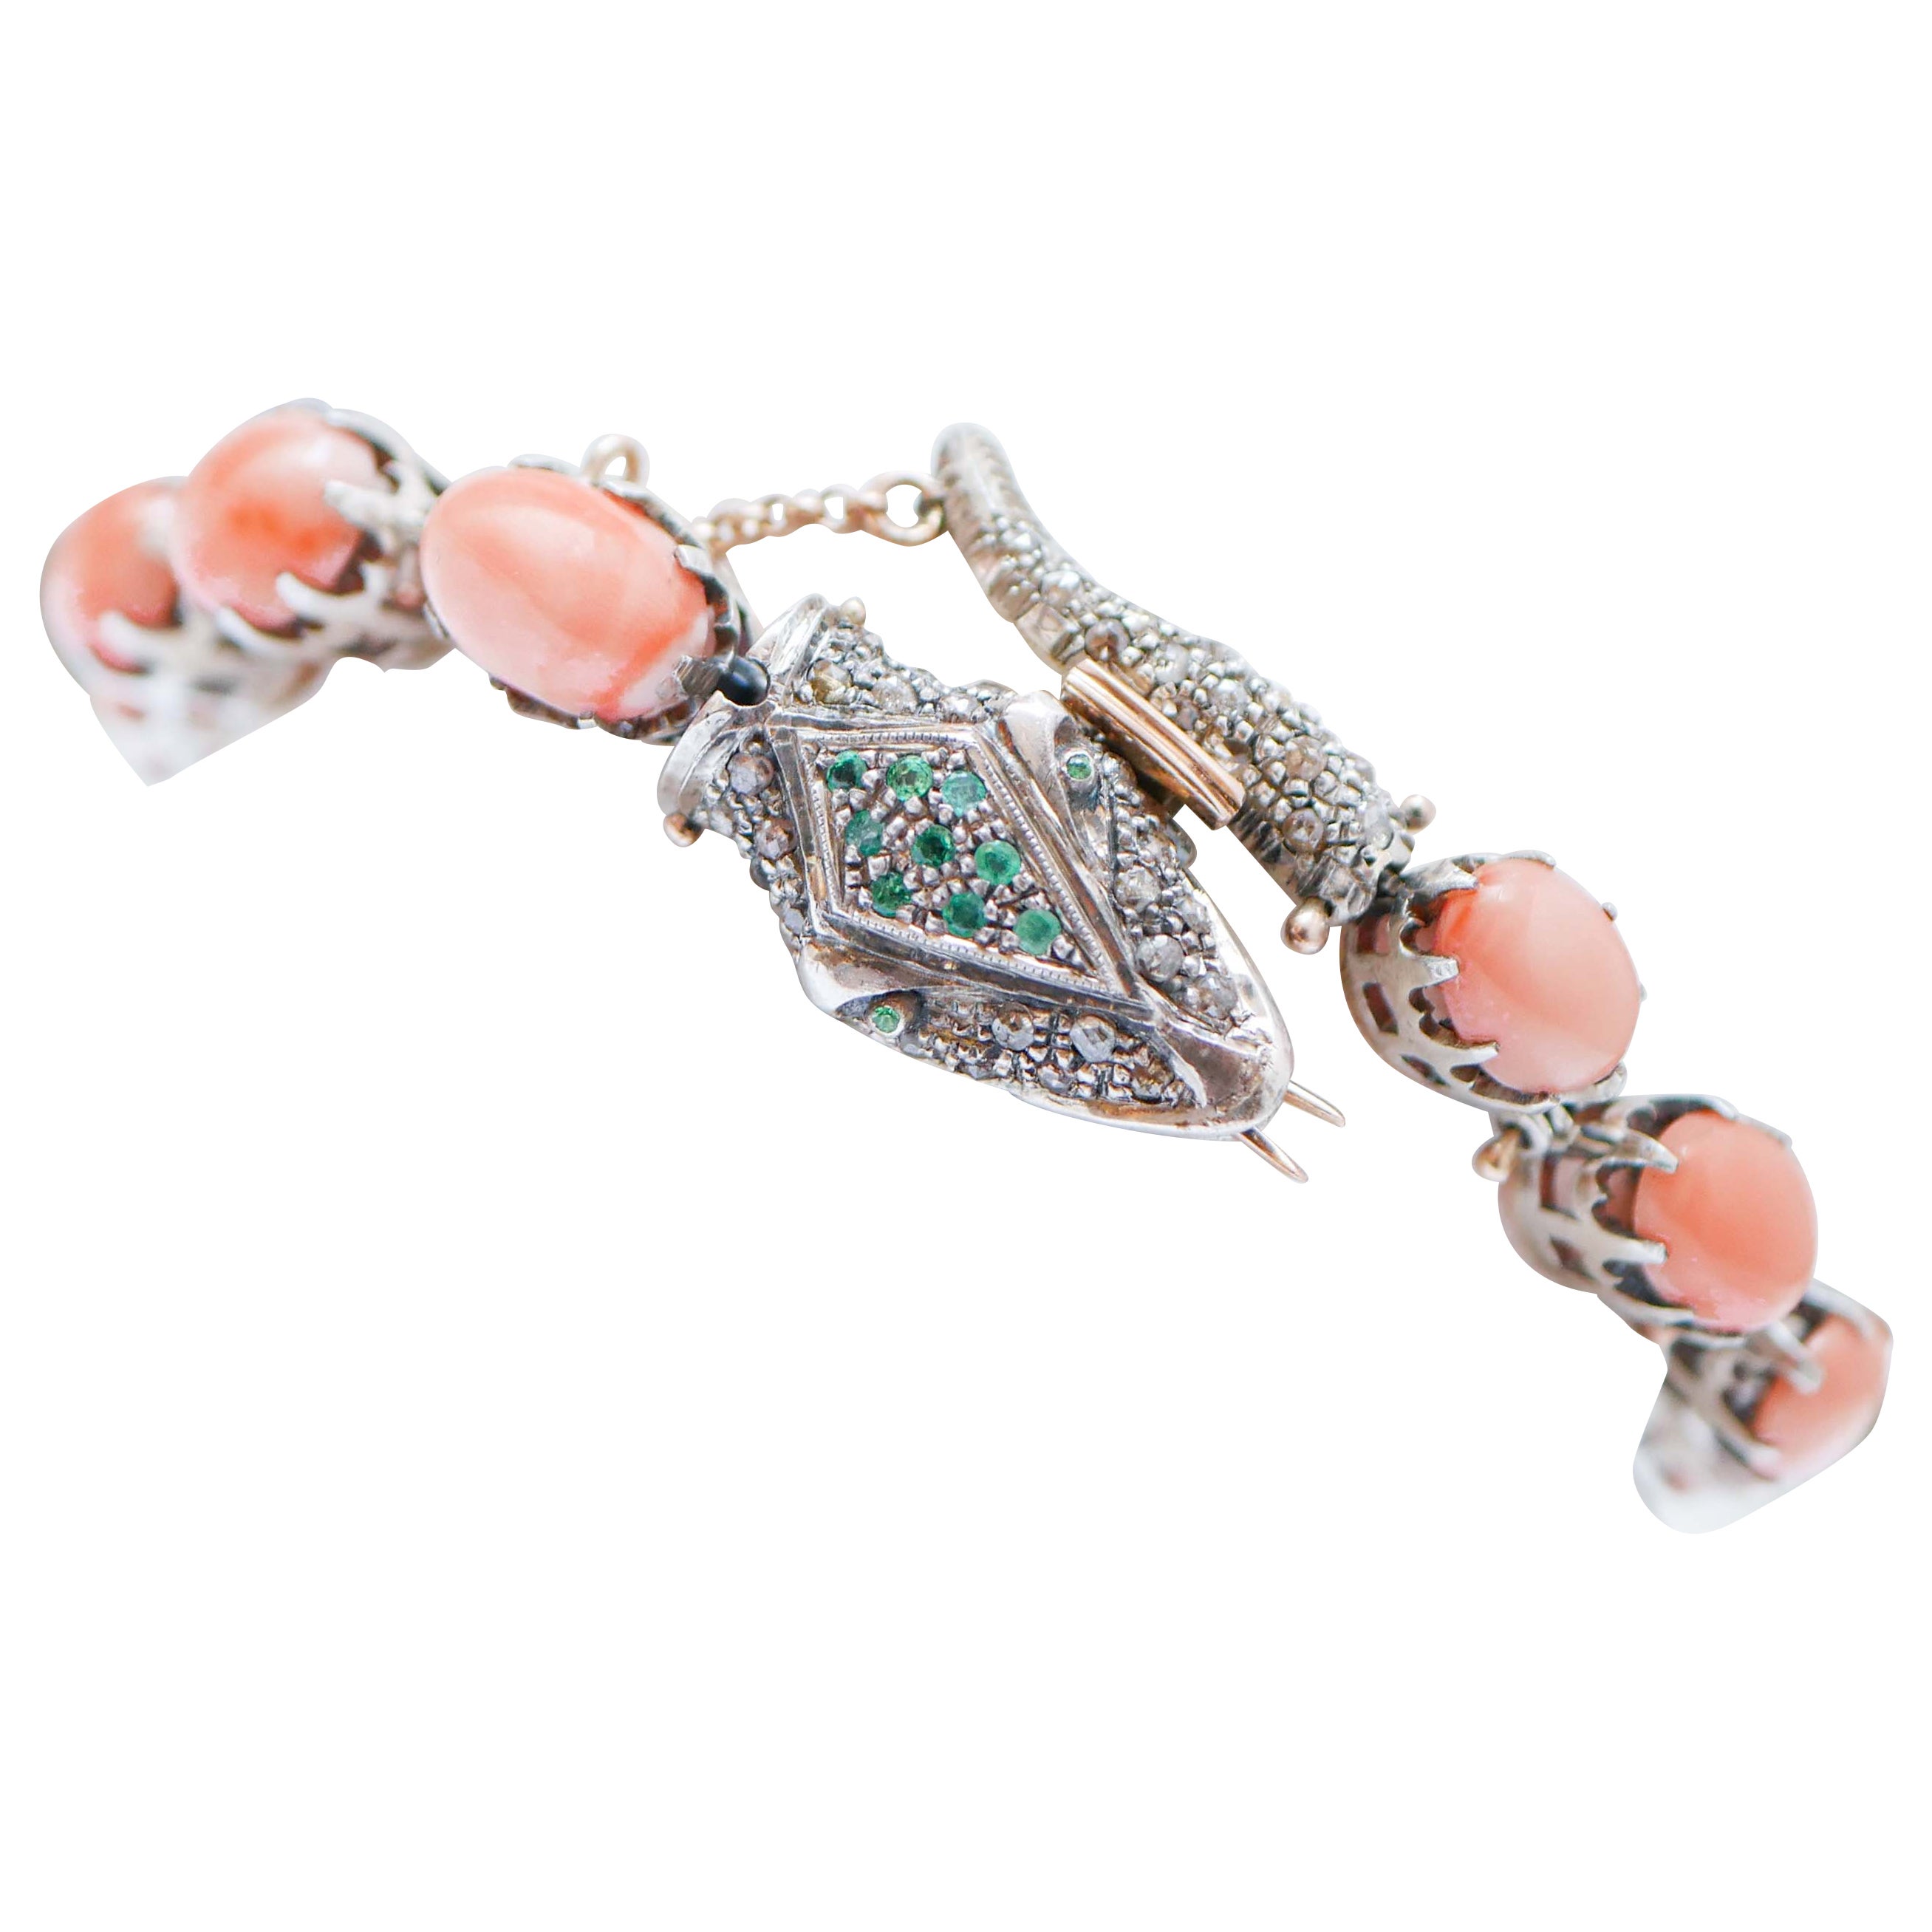 Bracelet serpent en or rose et argent, corail, émeraudes, tsavorites et diamants